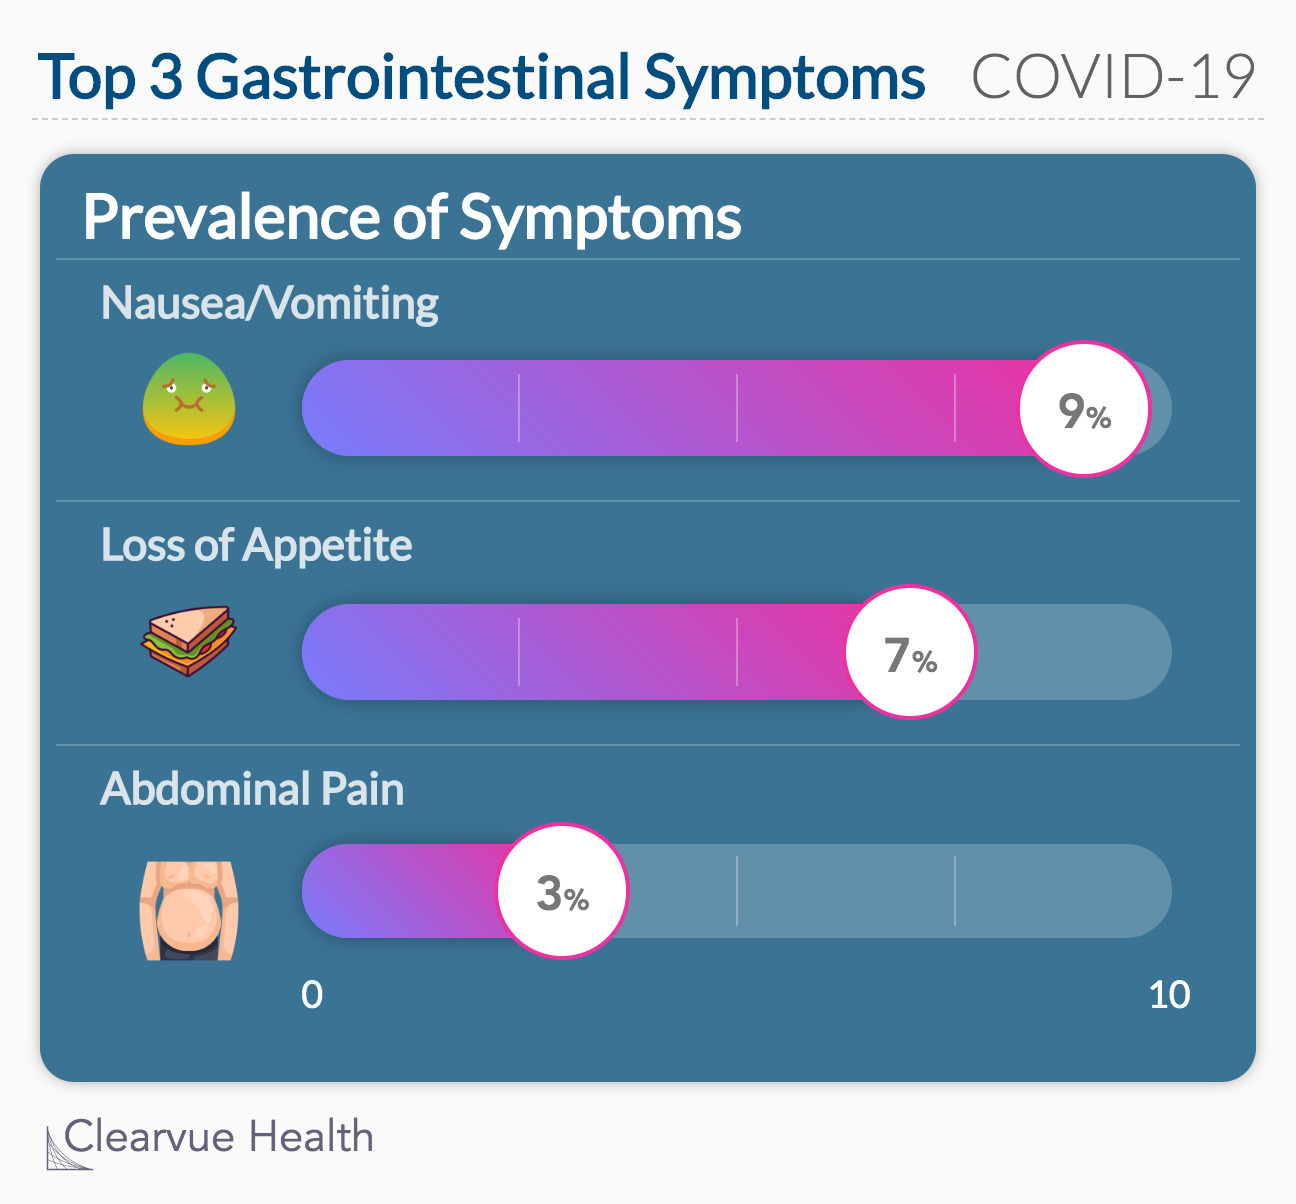 Top 3 Gastrointestinal Symptoms in COVID-19 